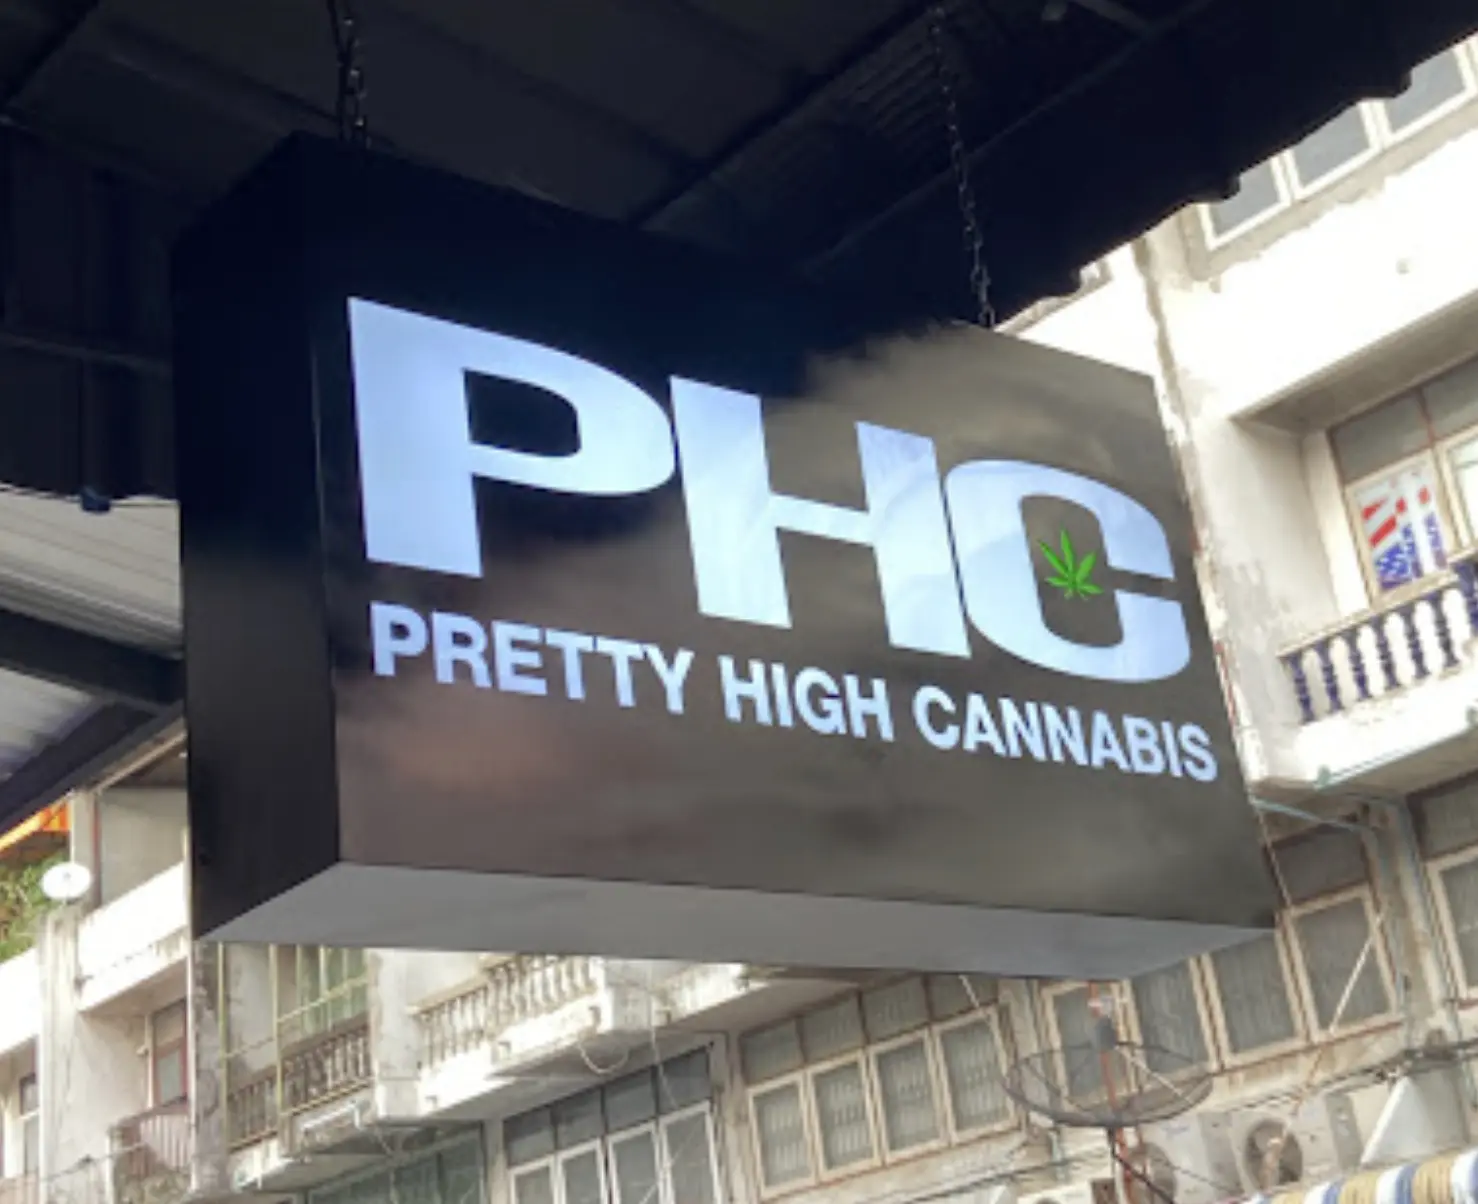 pretty high cannabis